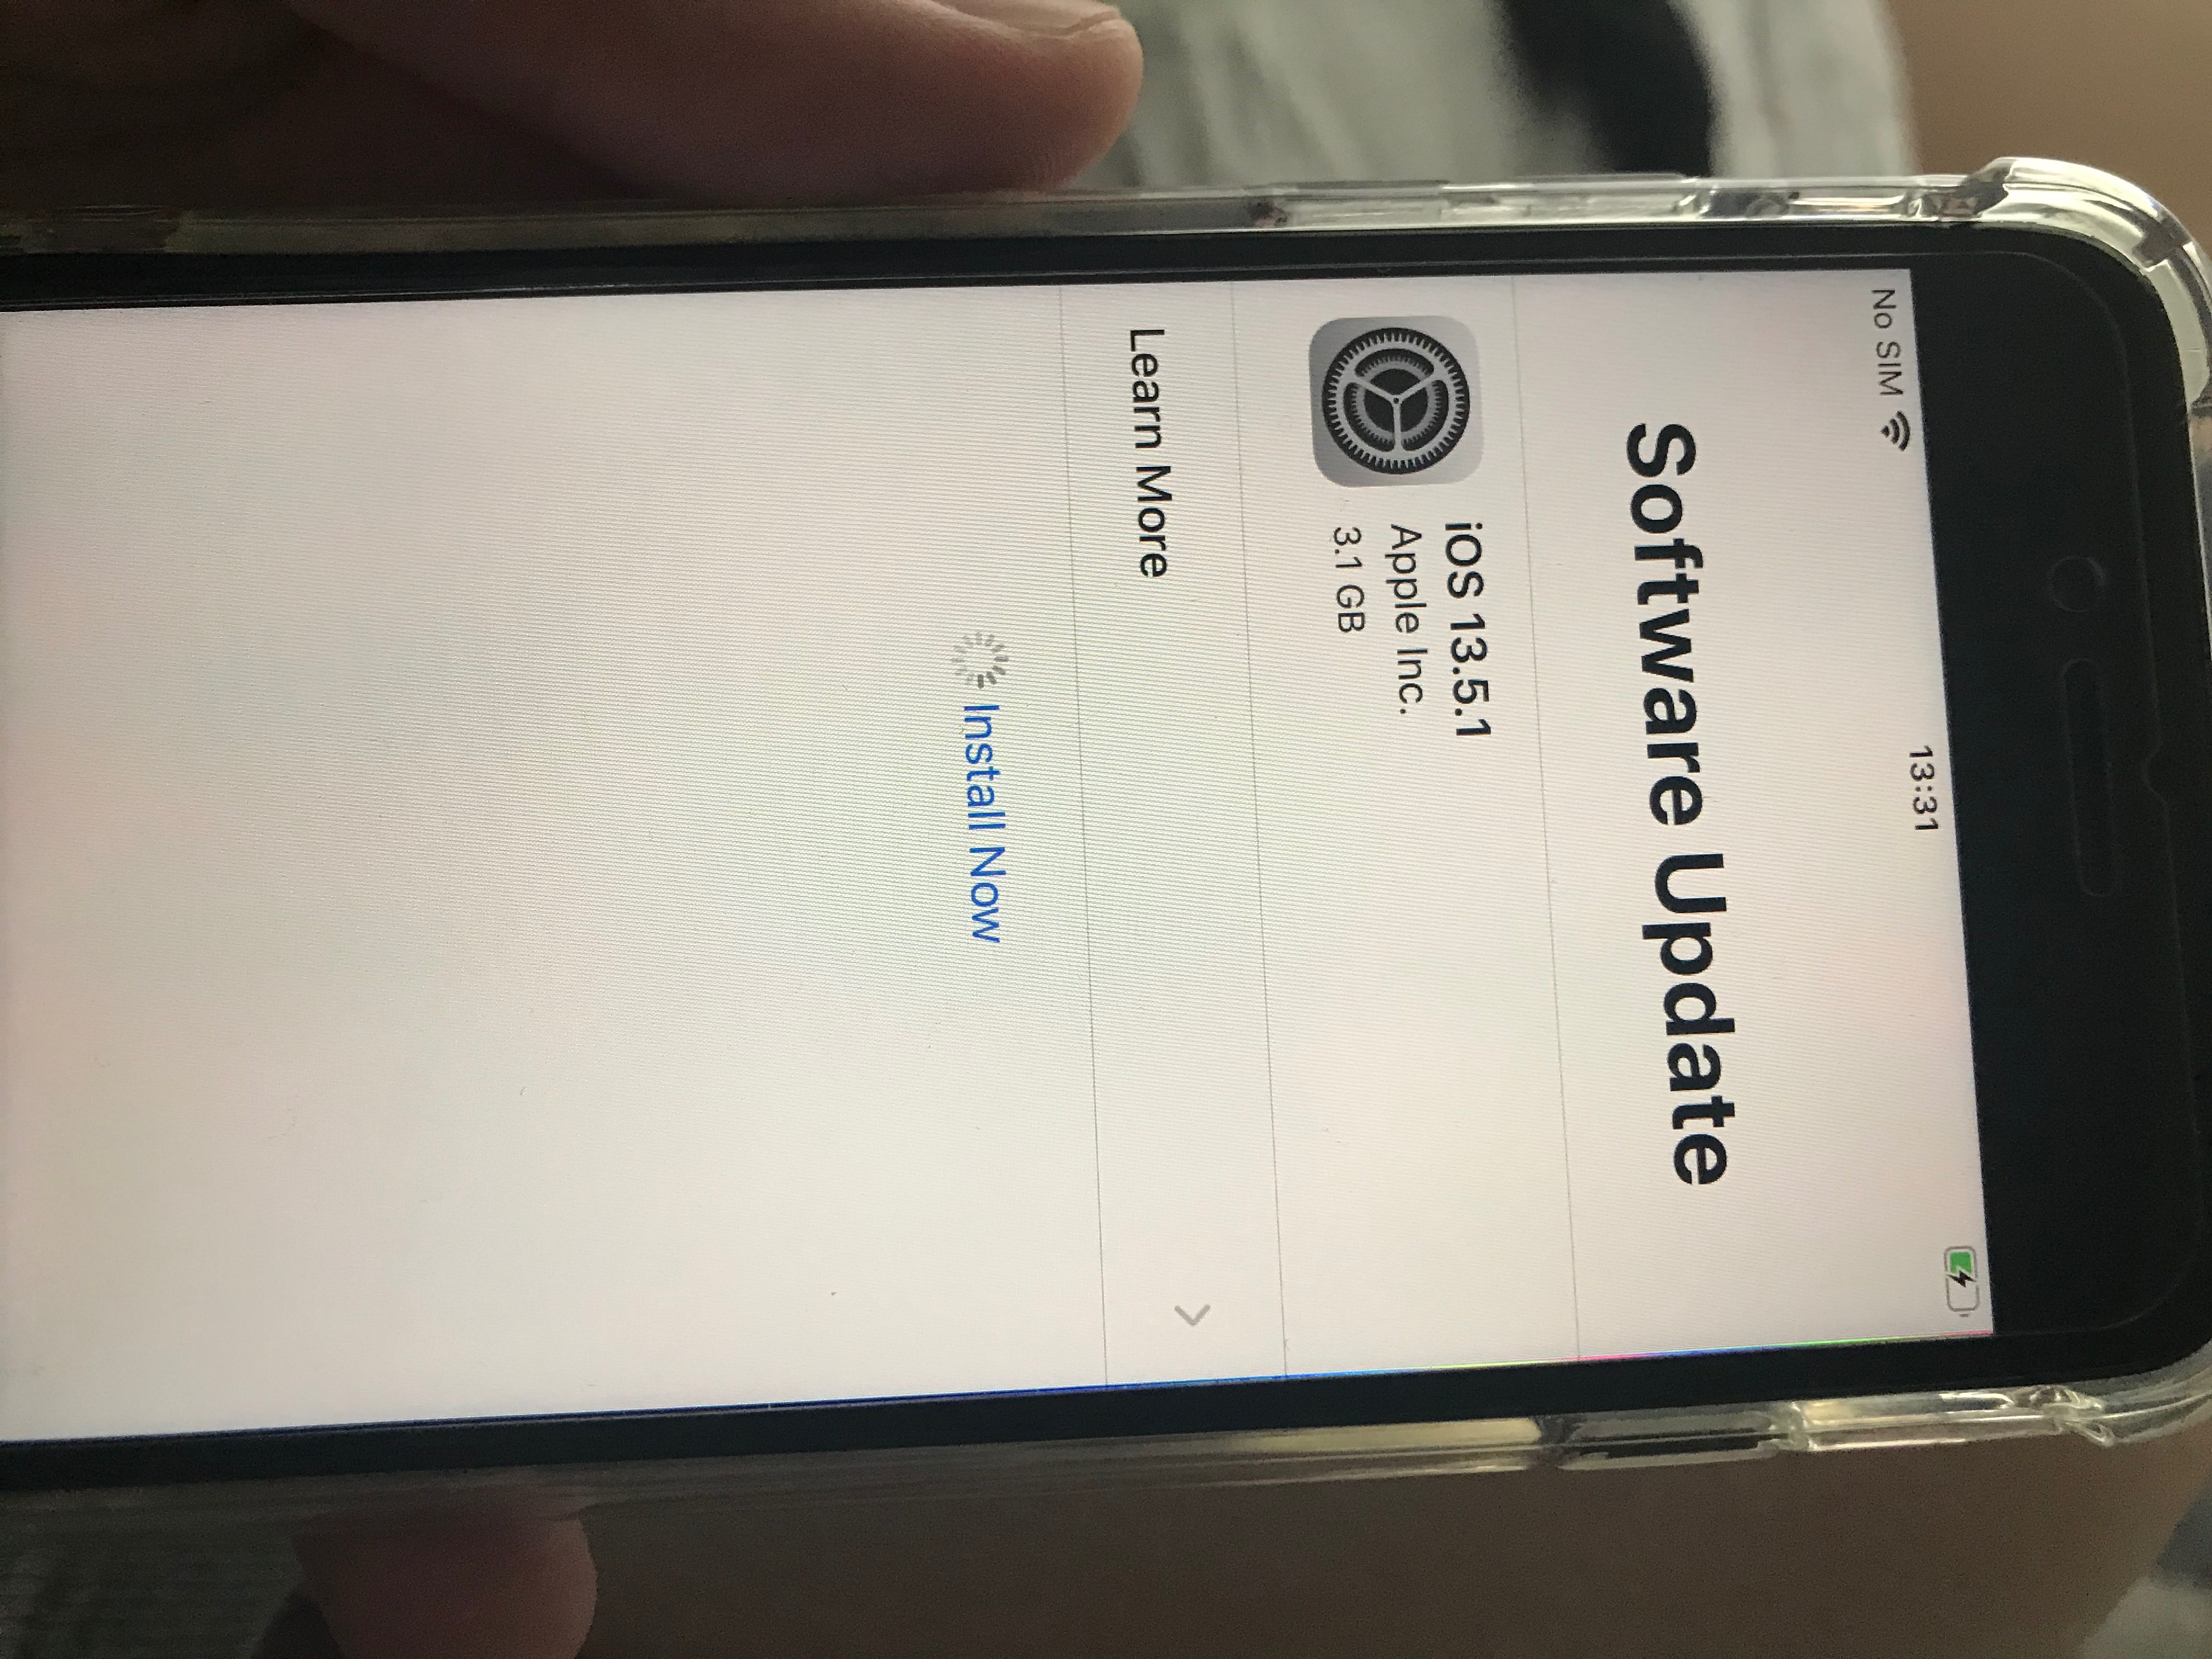 seviye öfke yönetici  New IPhone SE stuck on set up/ update - Apple Community